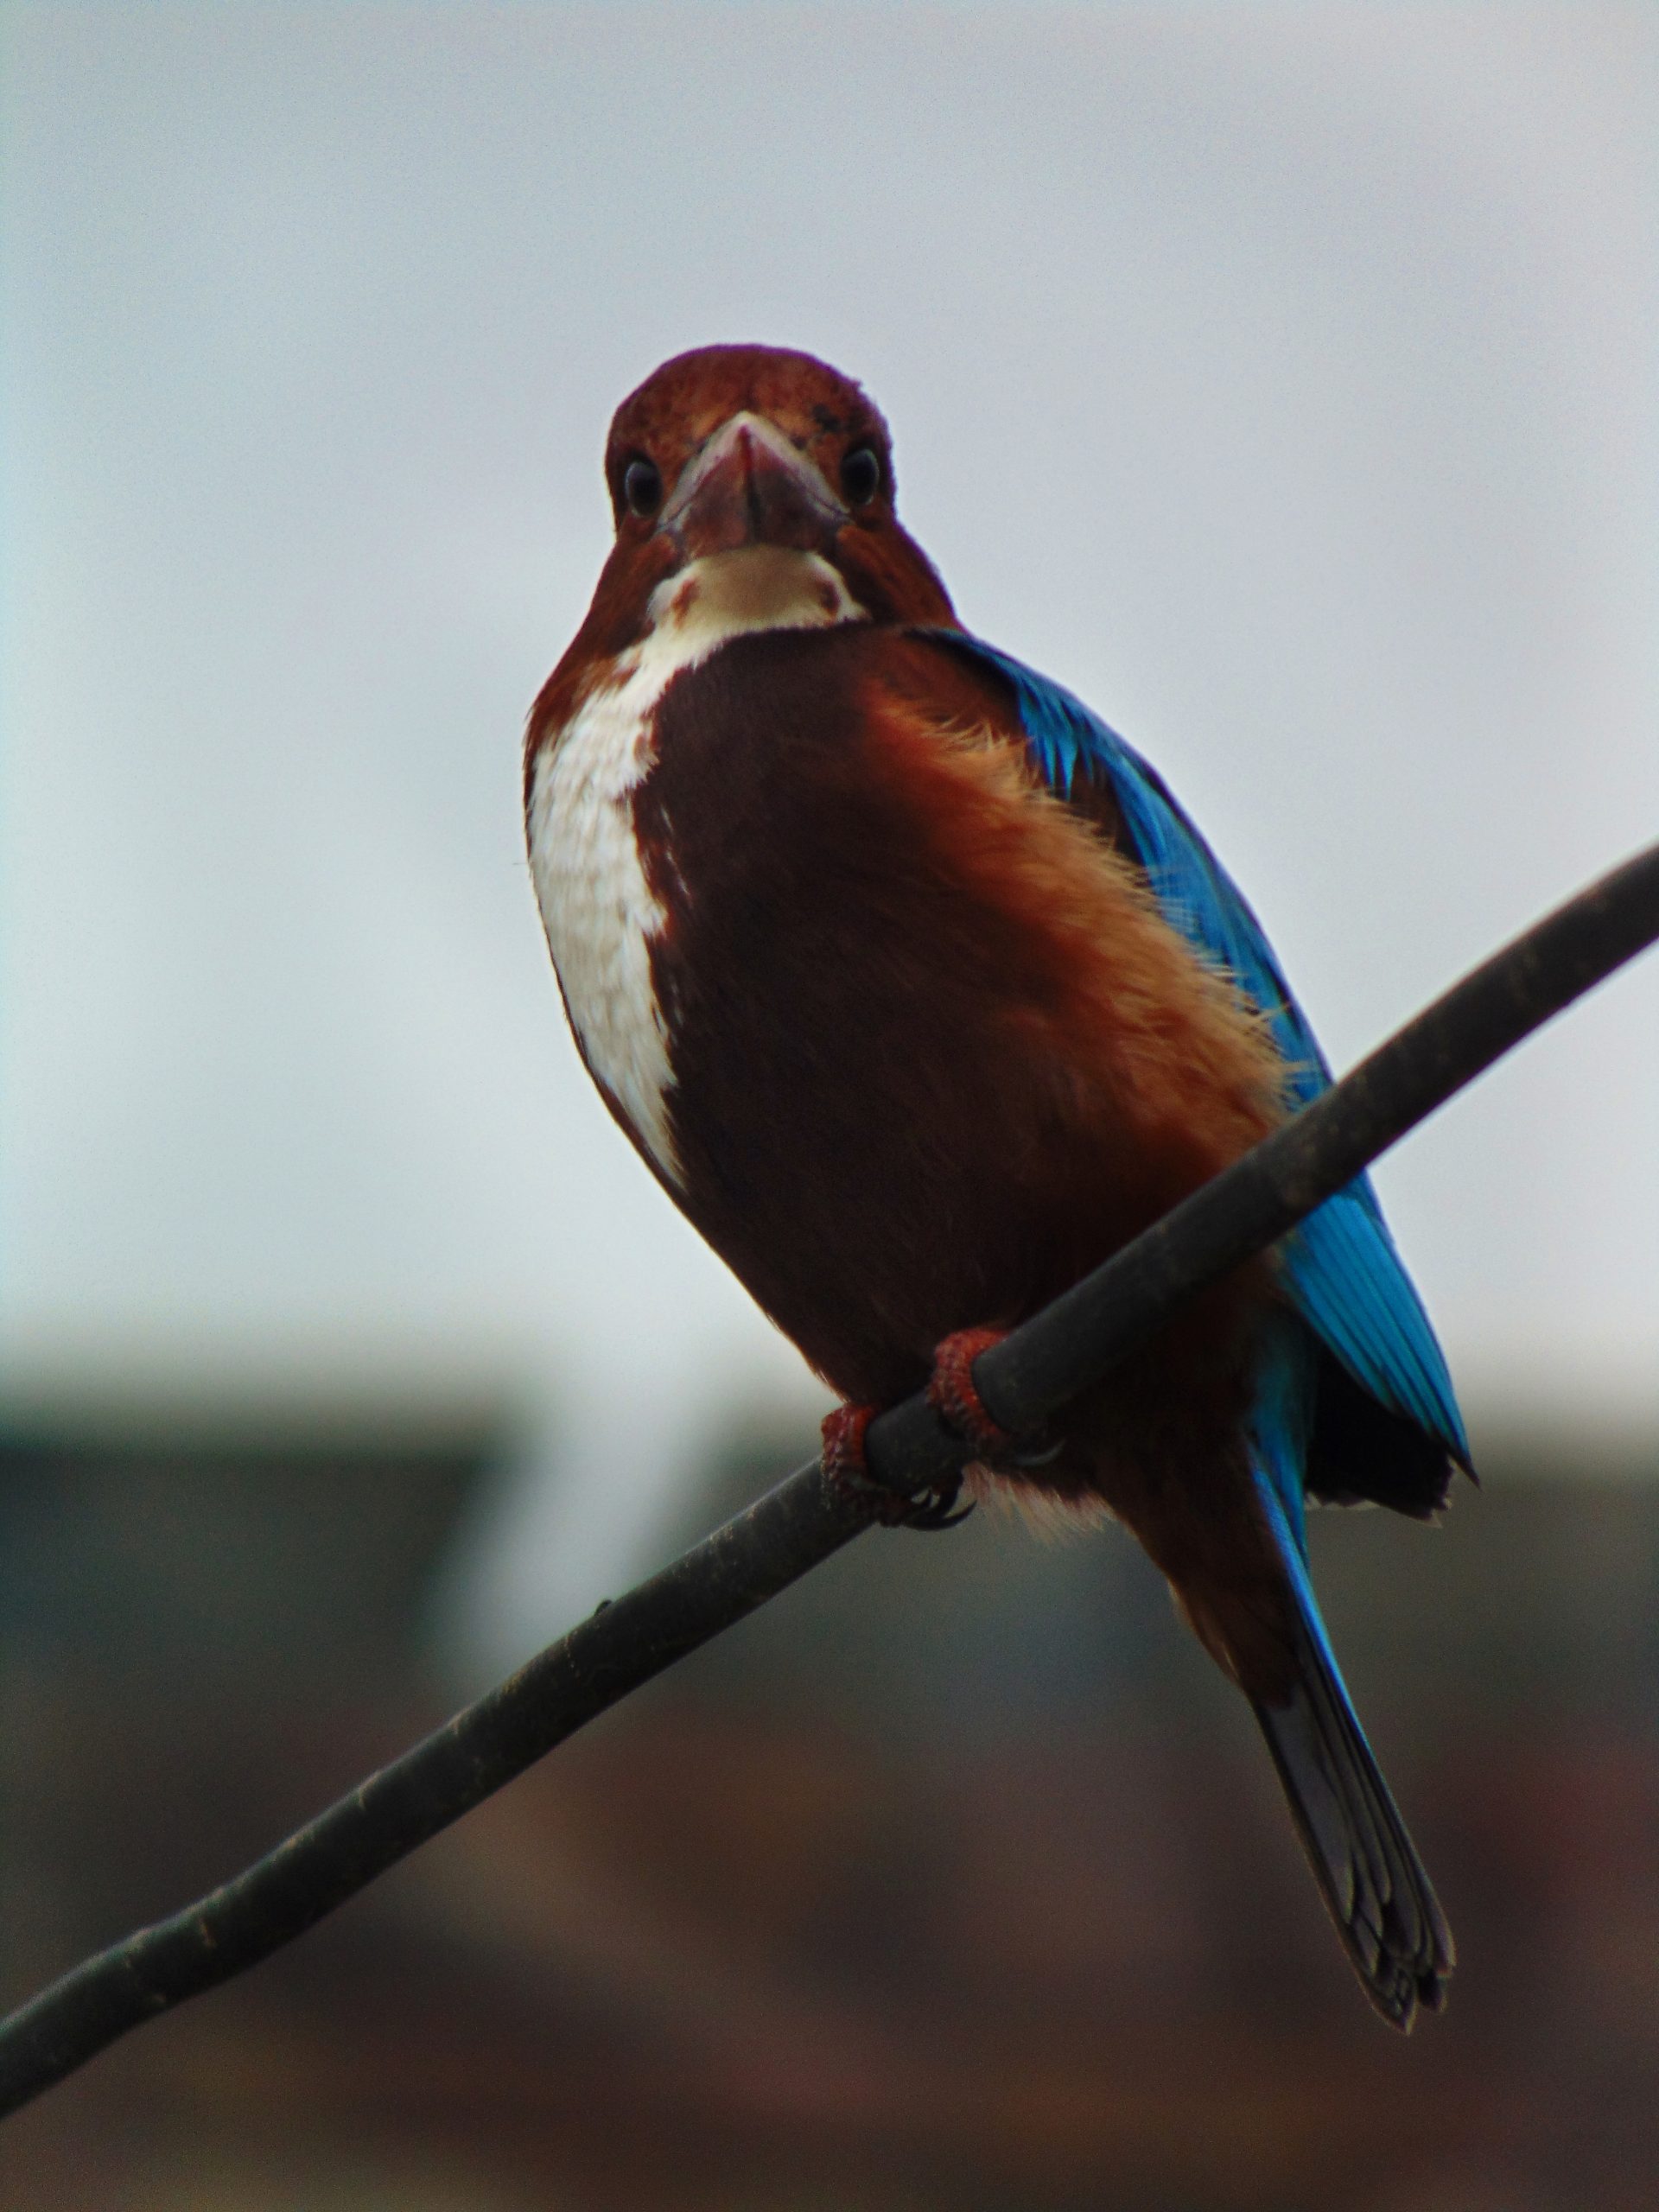 A kingfisher bird